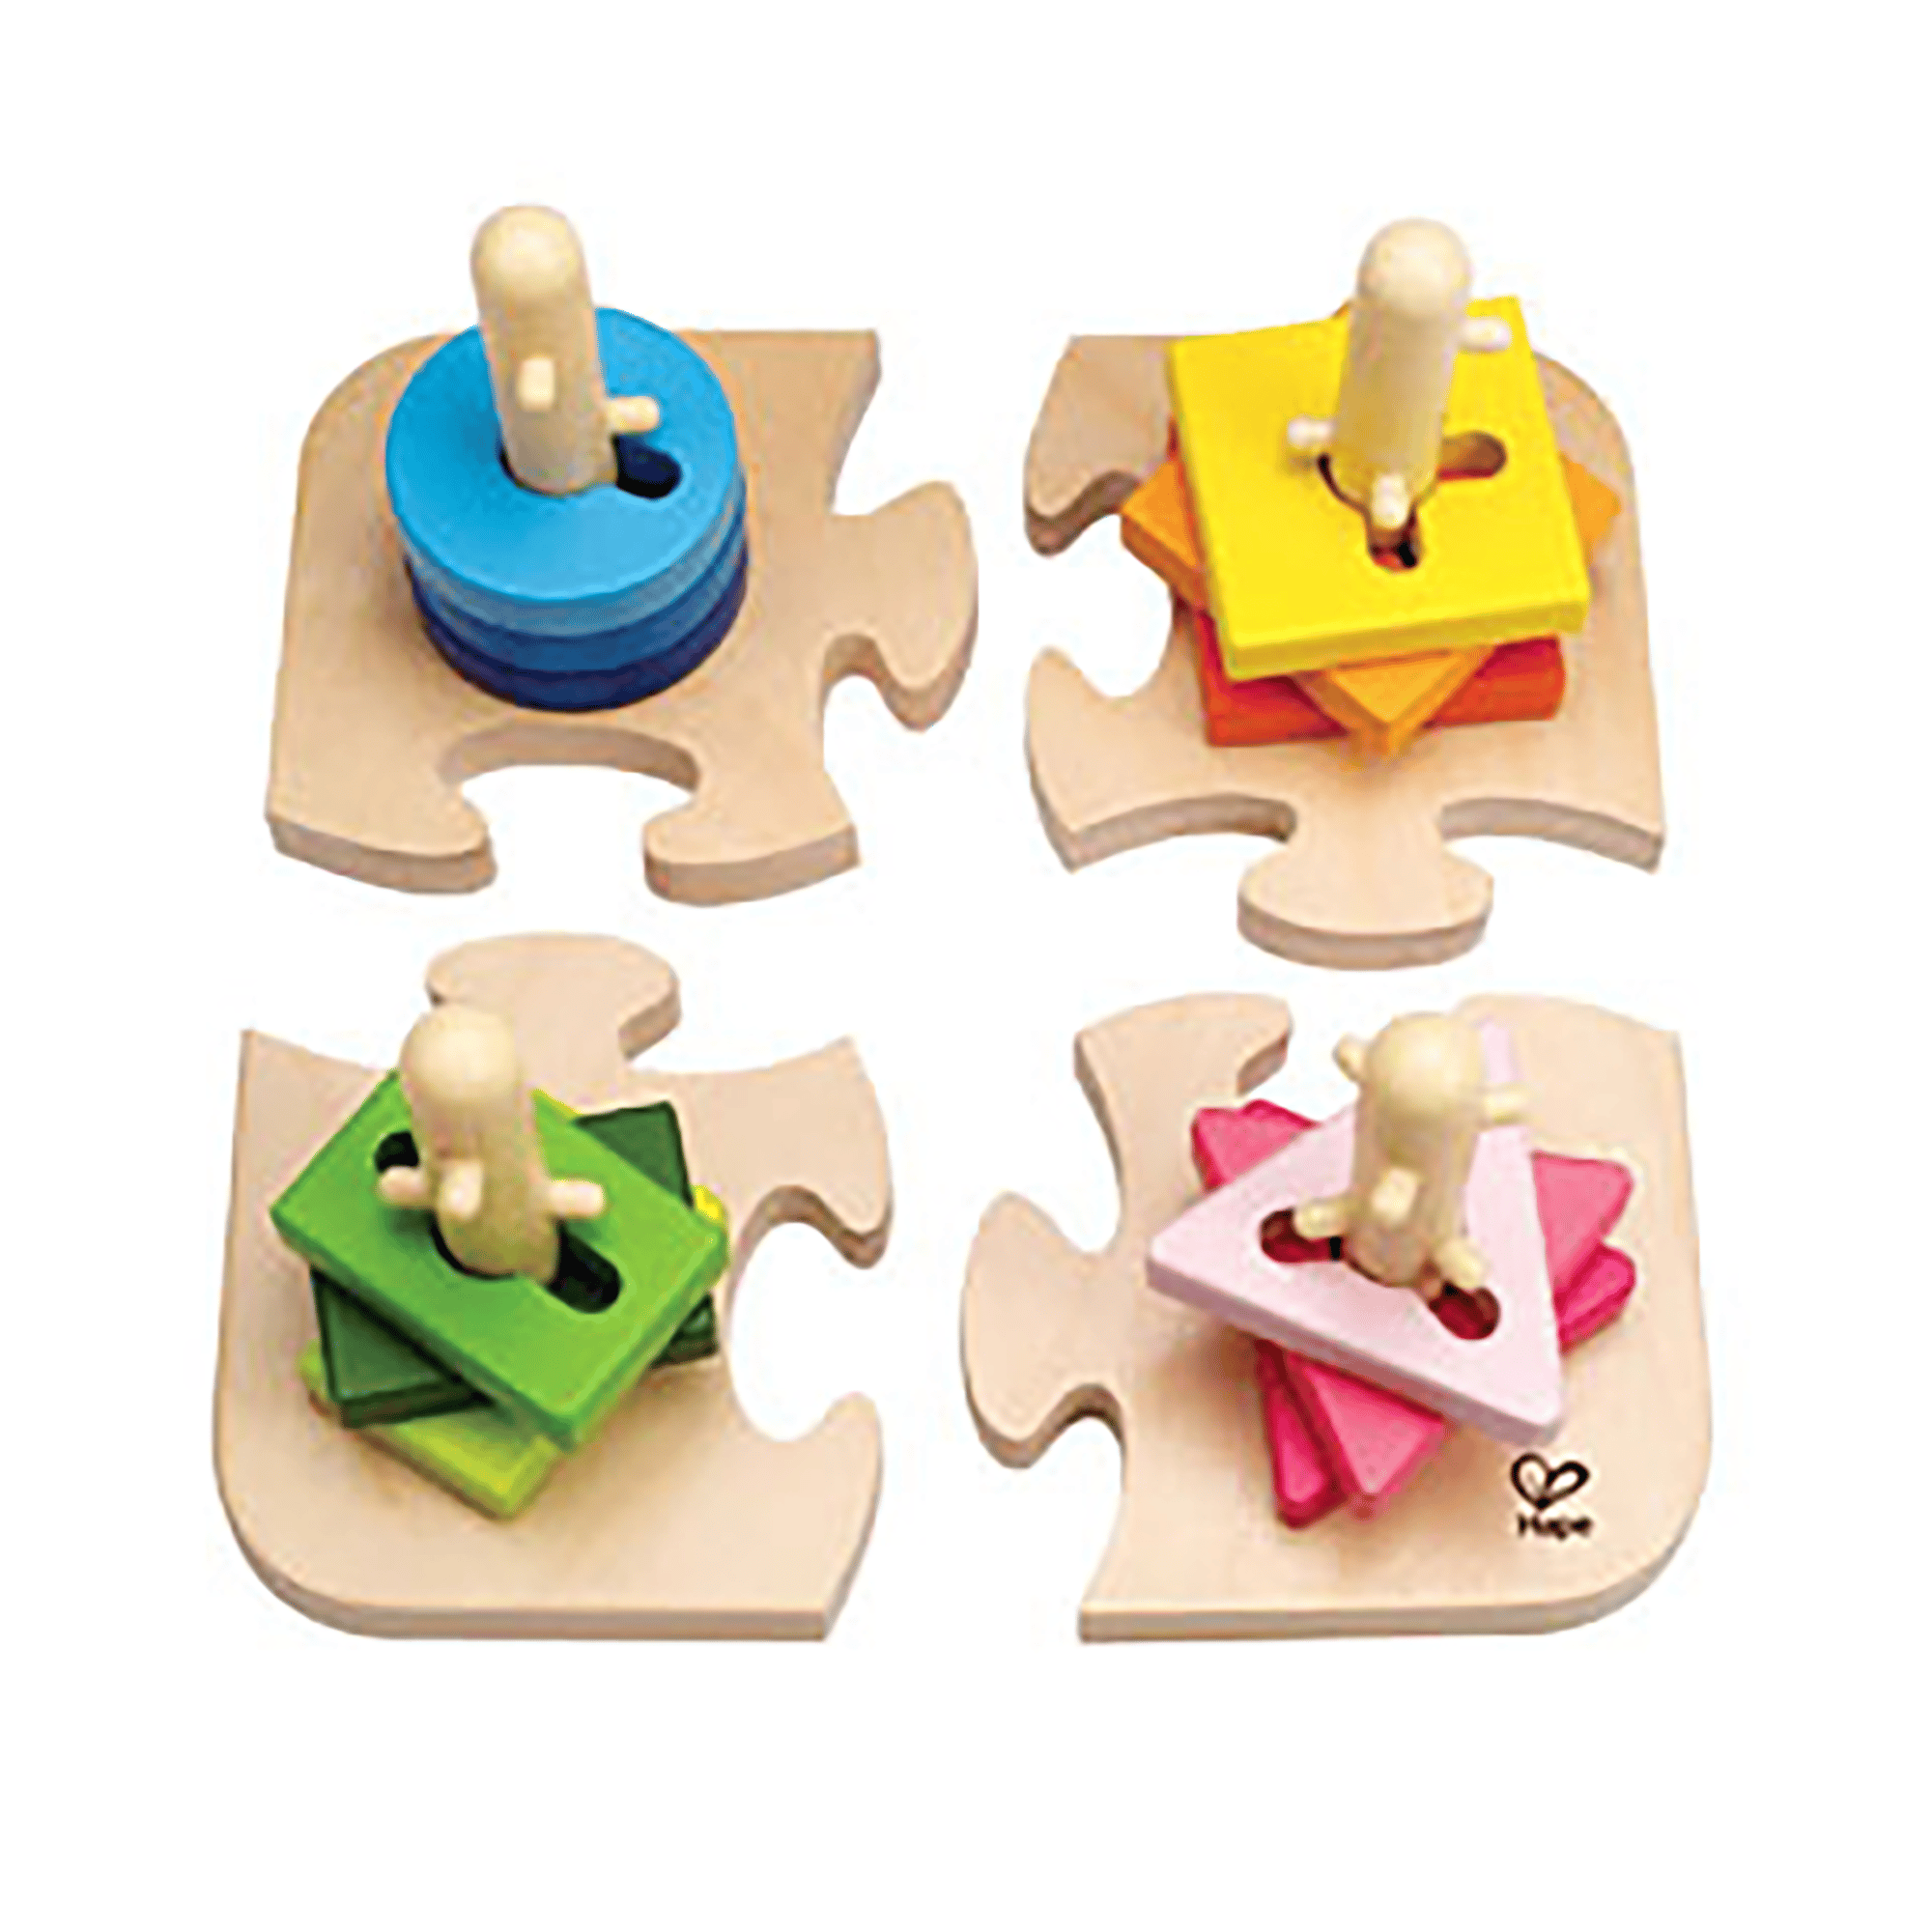 Kreatives Steckpuzzle aus Holz Hape Mehrfarbig 2000561552008 1